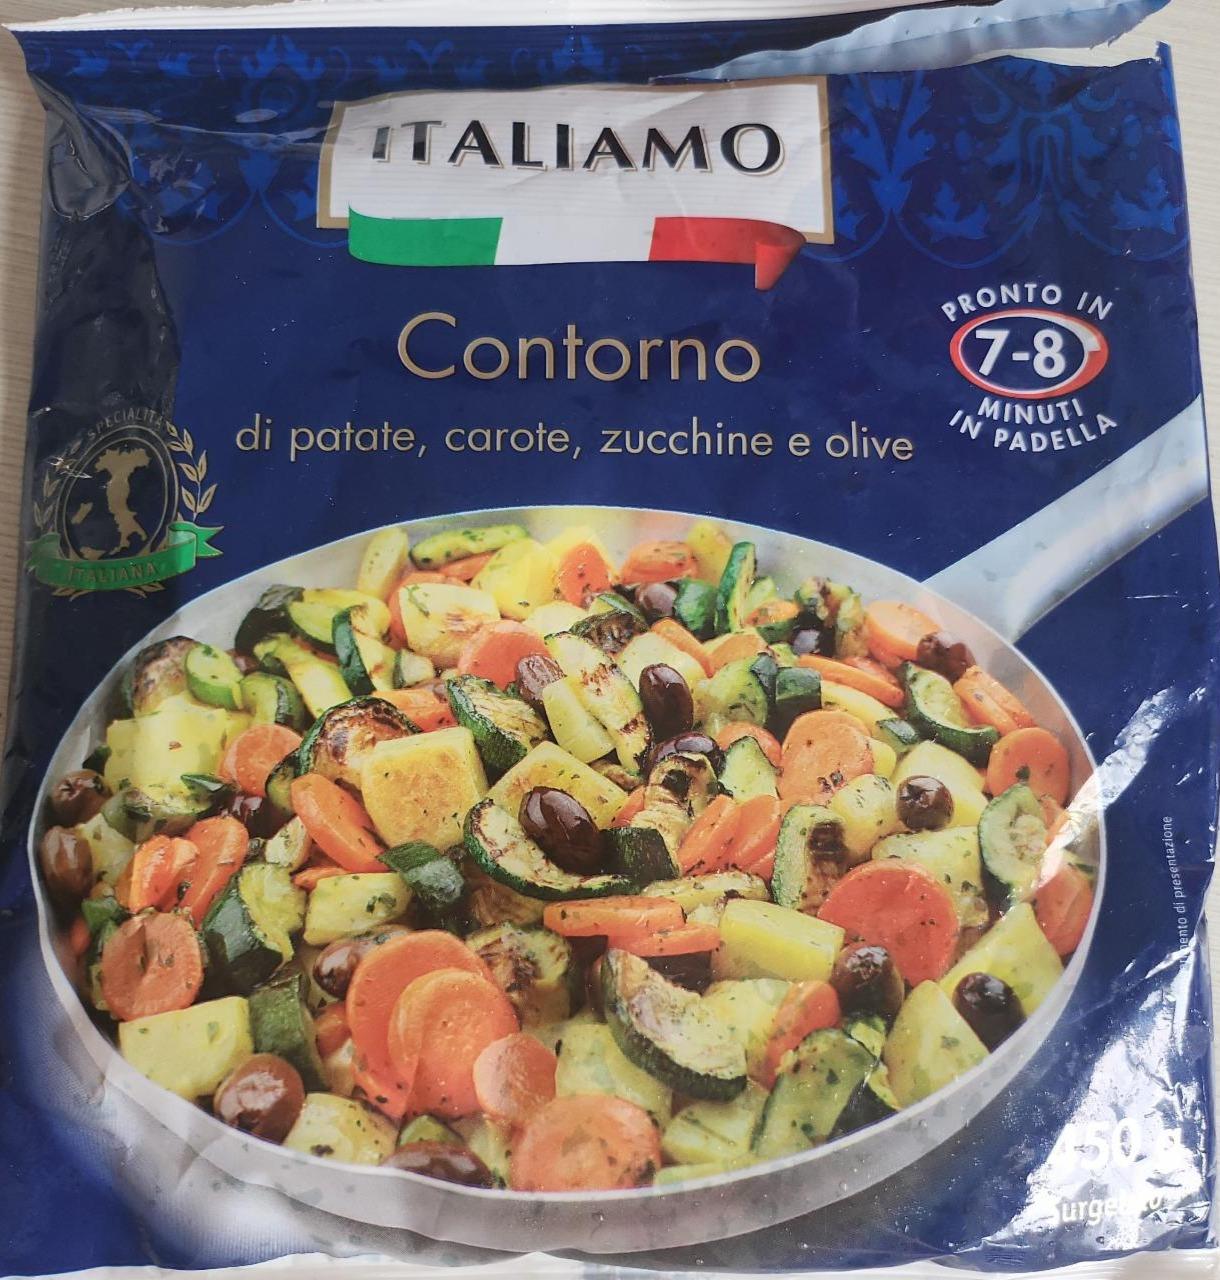 Fotografie - Contorno di patate, carote, zucchine e olive Italiamo